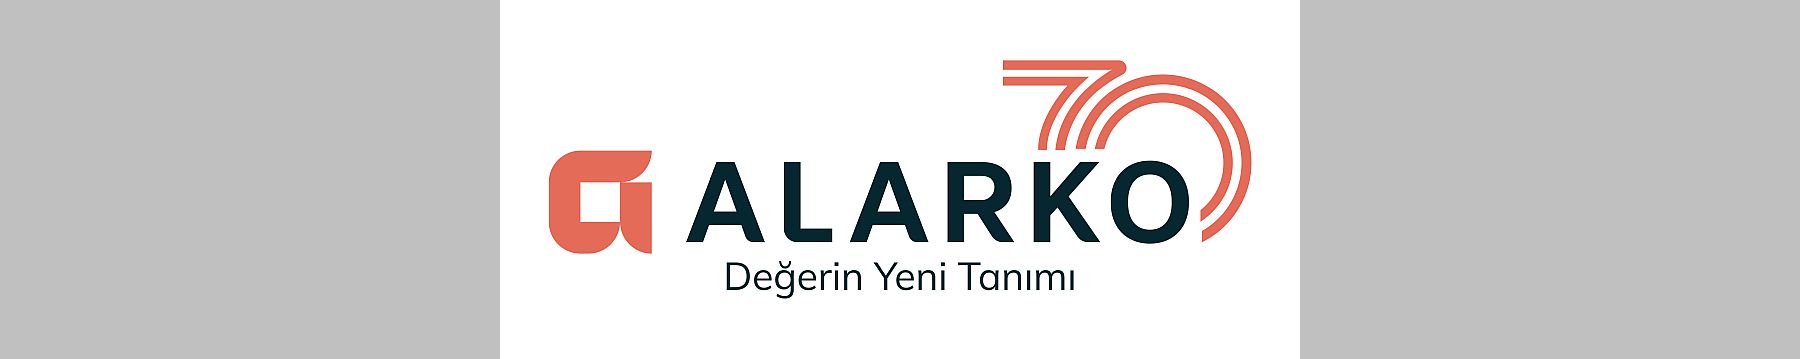 Alarko Holding, 70. yılını yeni yatırımları, yeni hedefleri ve yeni logosu ile kutluyor